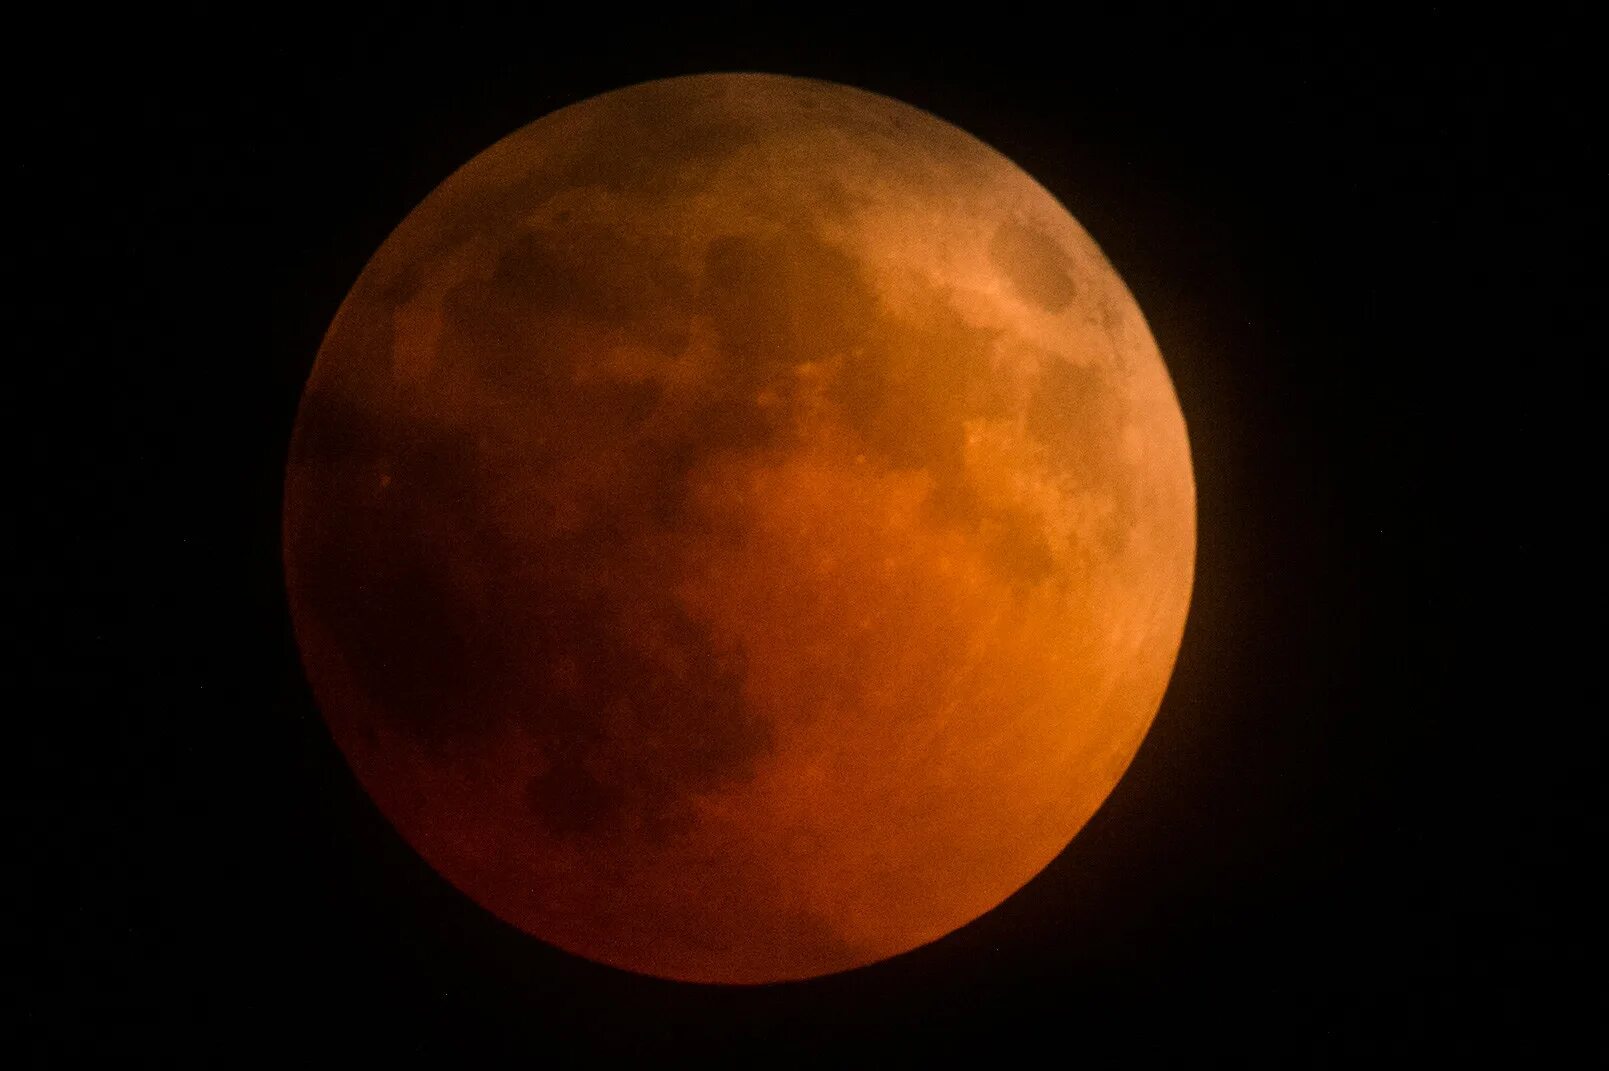 2023 11 08. Затмение солнца и Луны. Красная Луна. Лунное затмение фото. Полное затмение Луны.